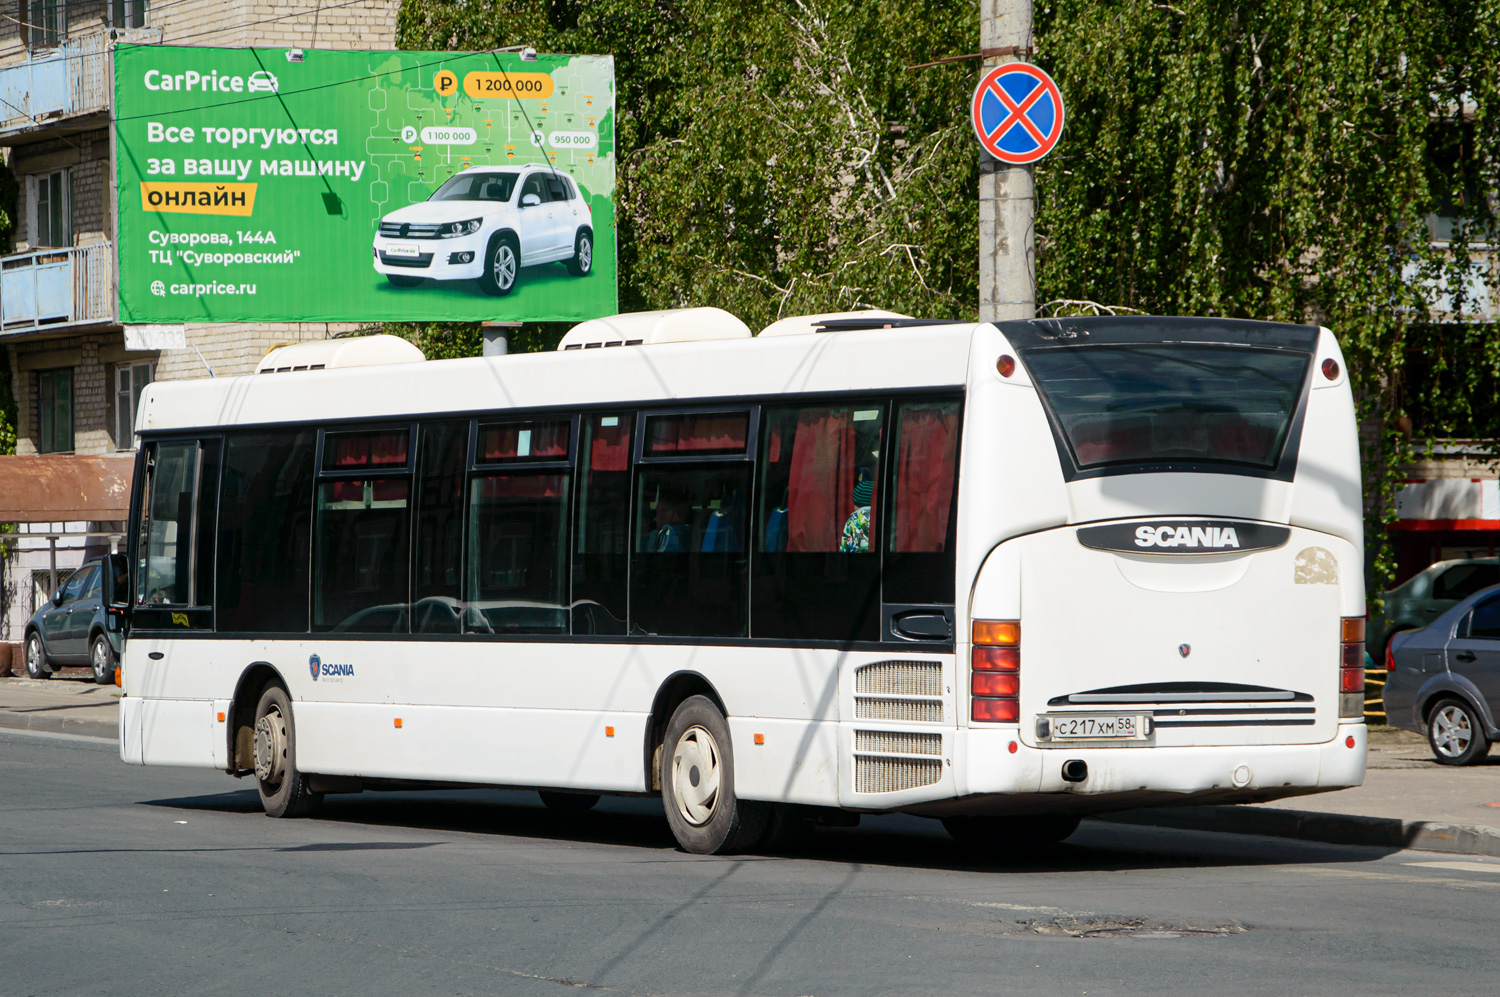 Пензенская область, Scania OmniLink I (Скания-Питер) № С 217 ХМ 58